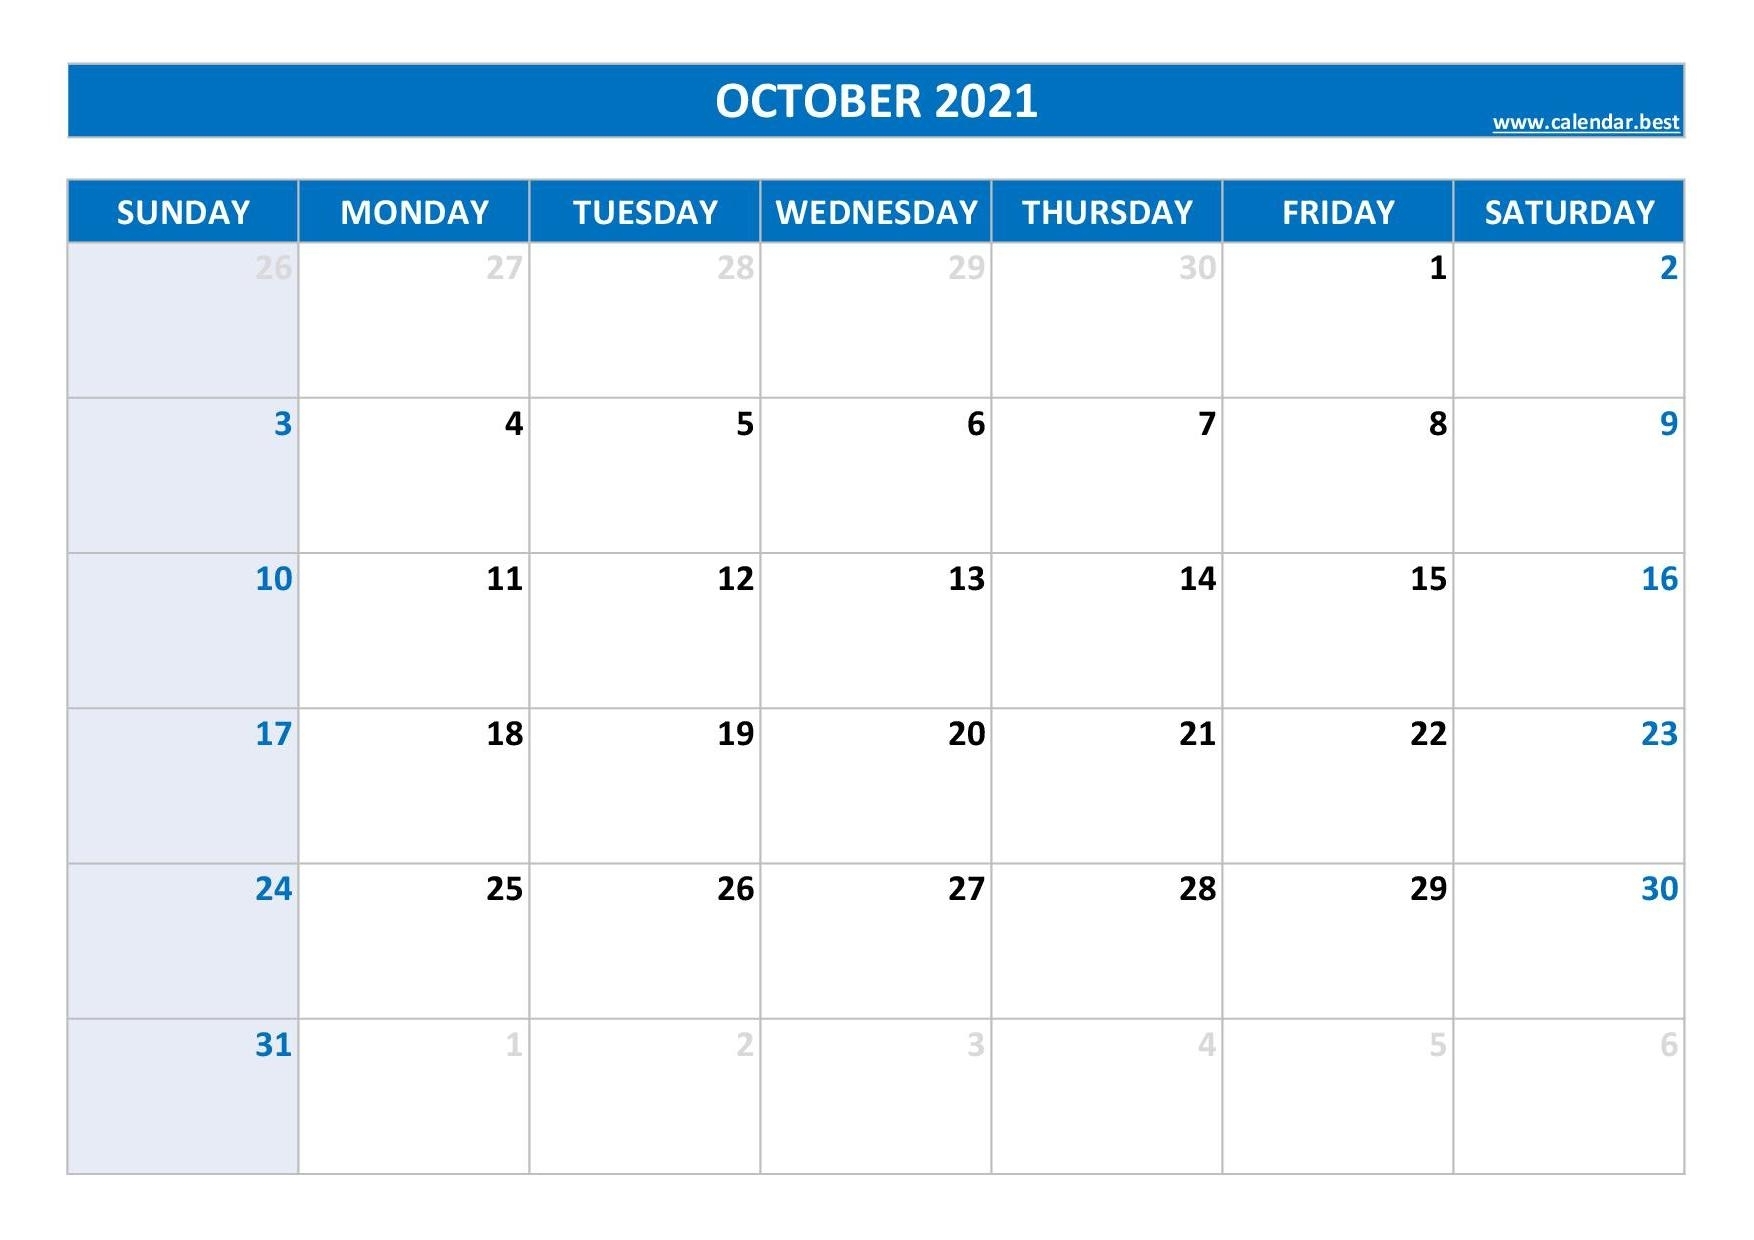 October 2021 Calendar -Calendar.best